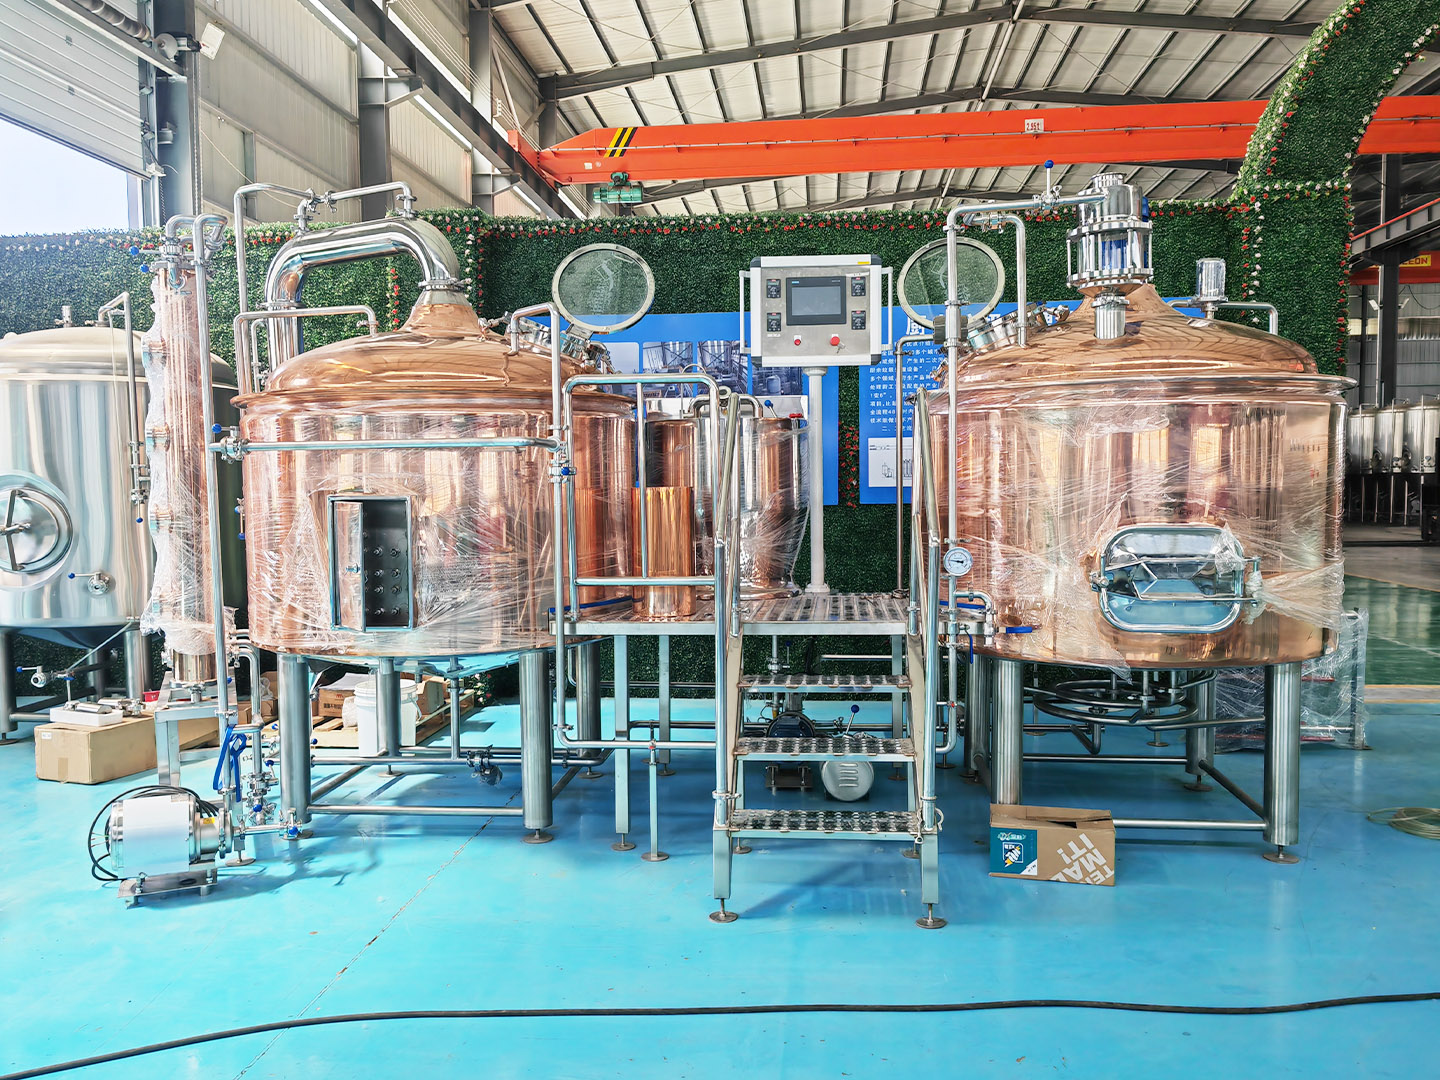 Copper Beer Equipment